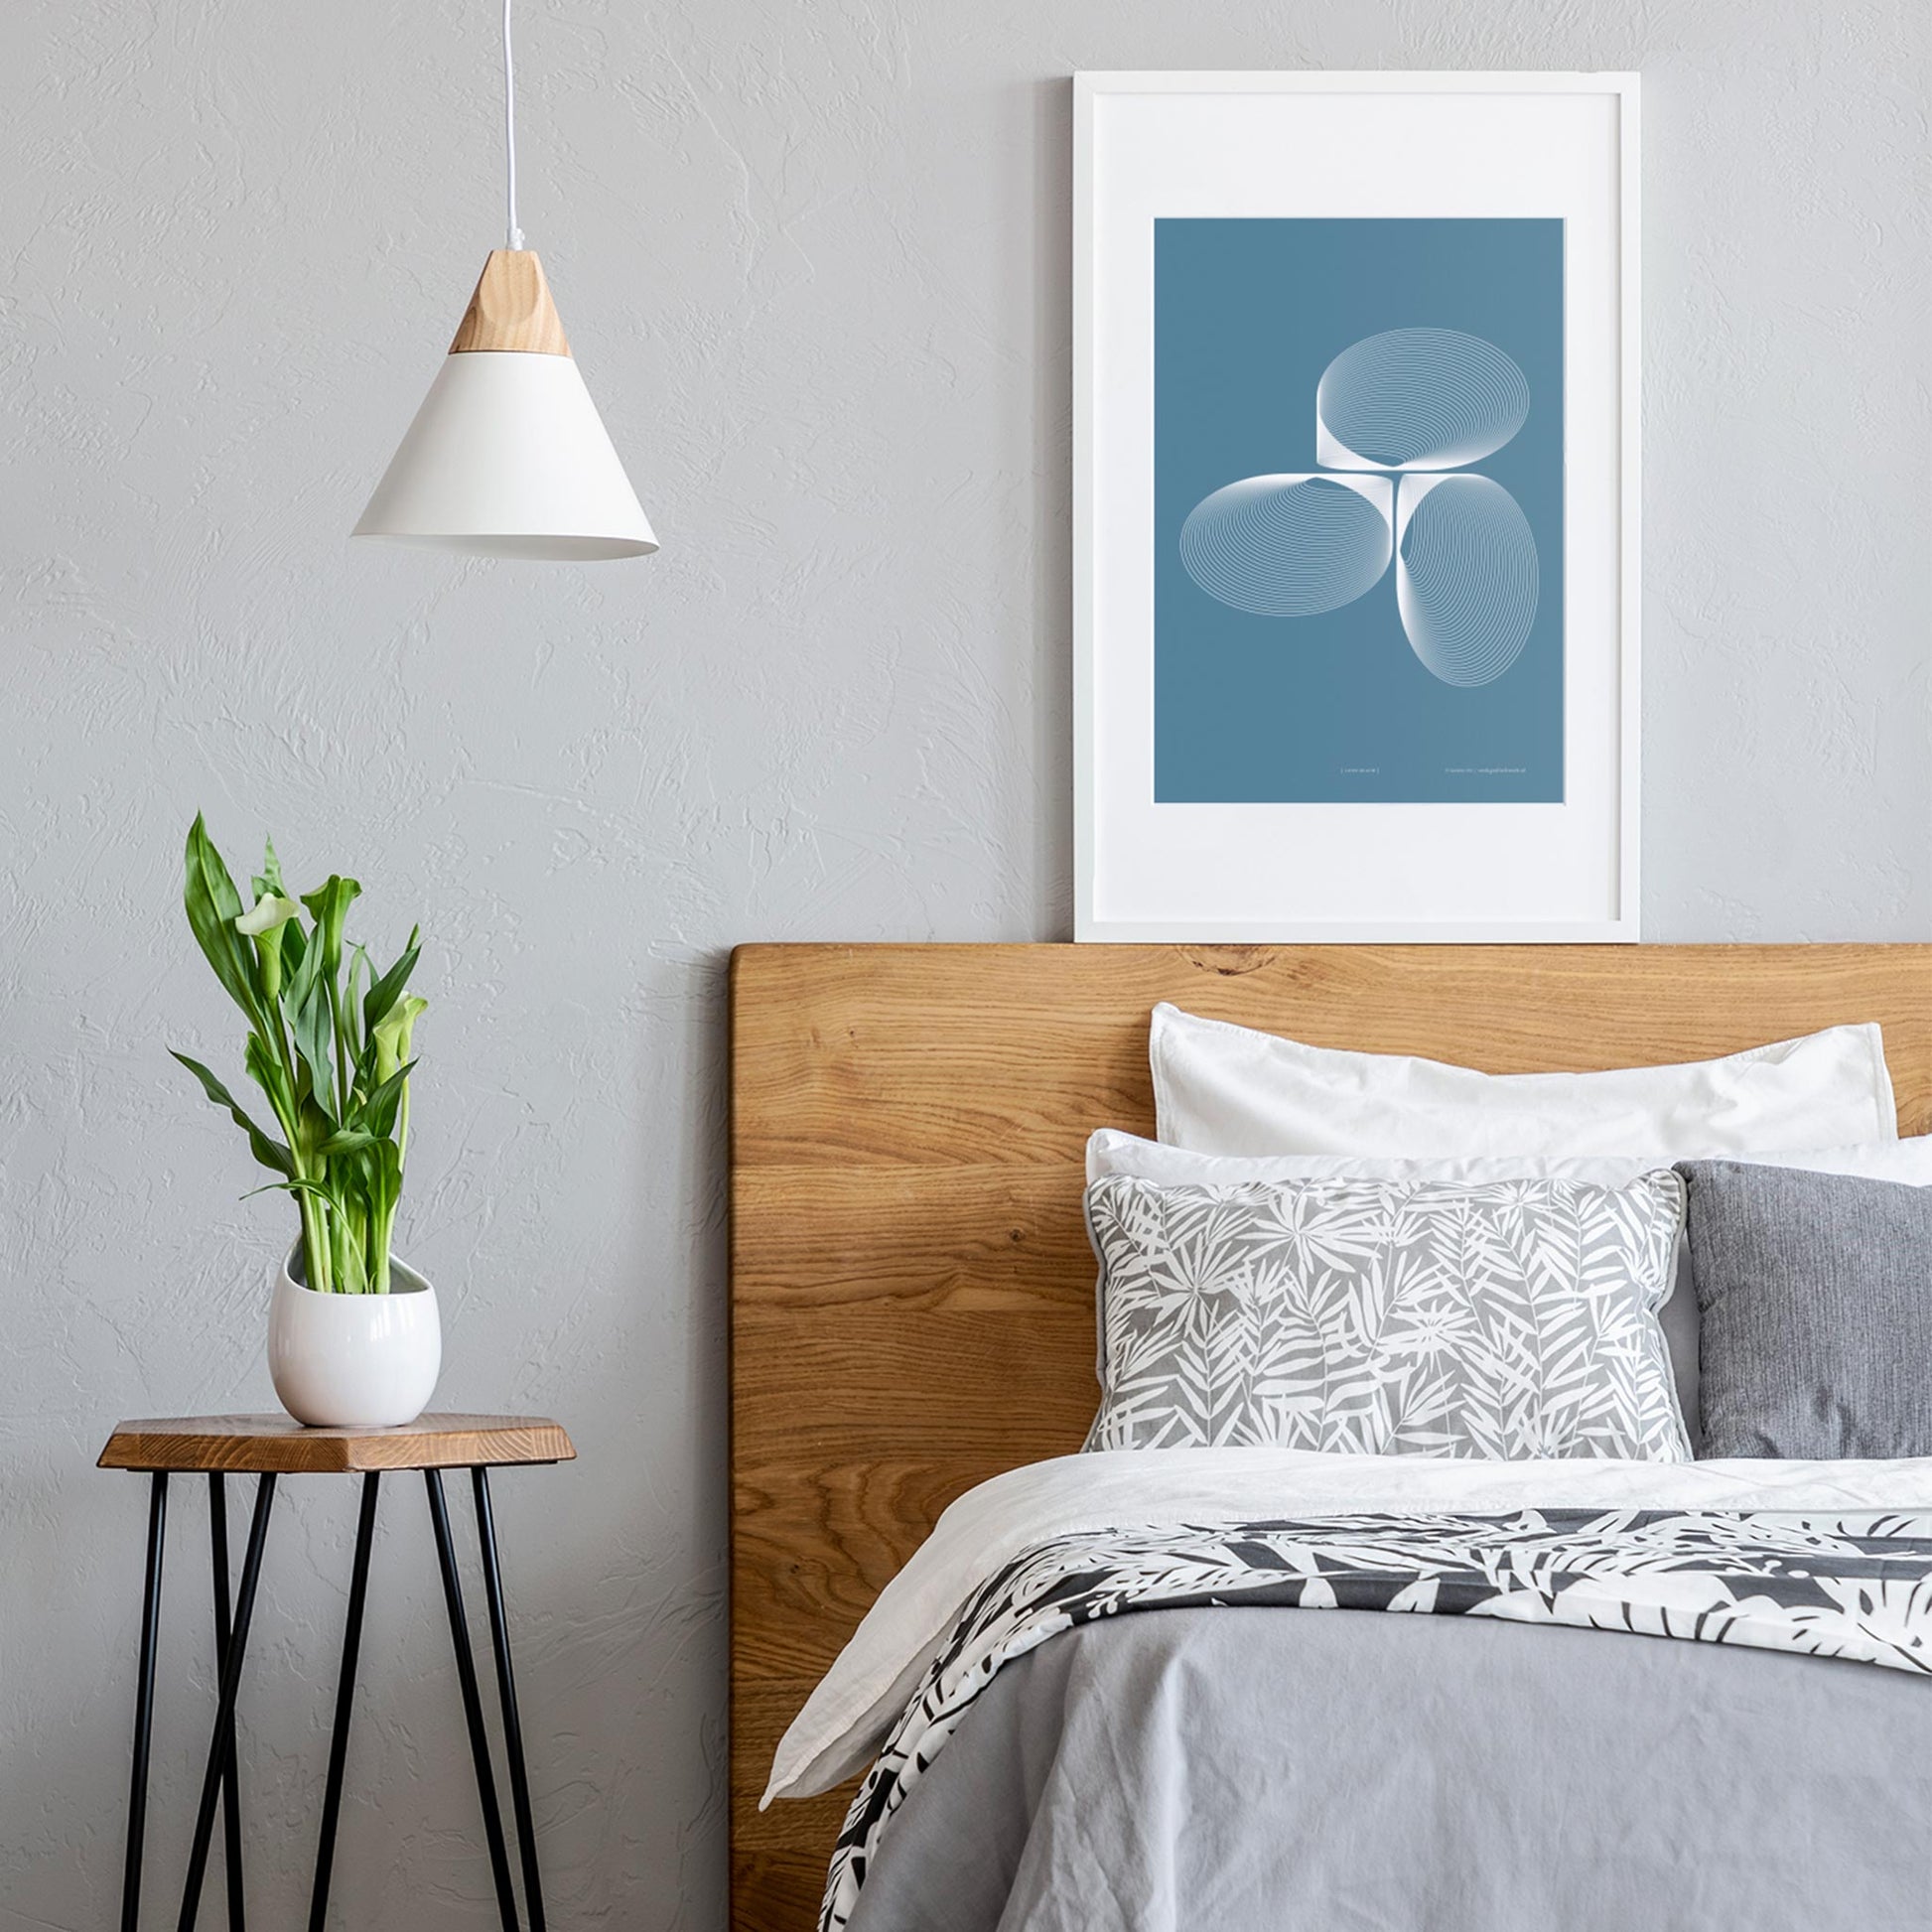 Productafbeelding, poster "licht-blauw", foto impressie 2, hangend boven een bed in een interieur